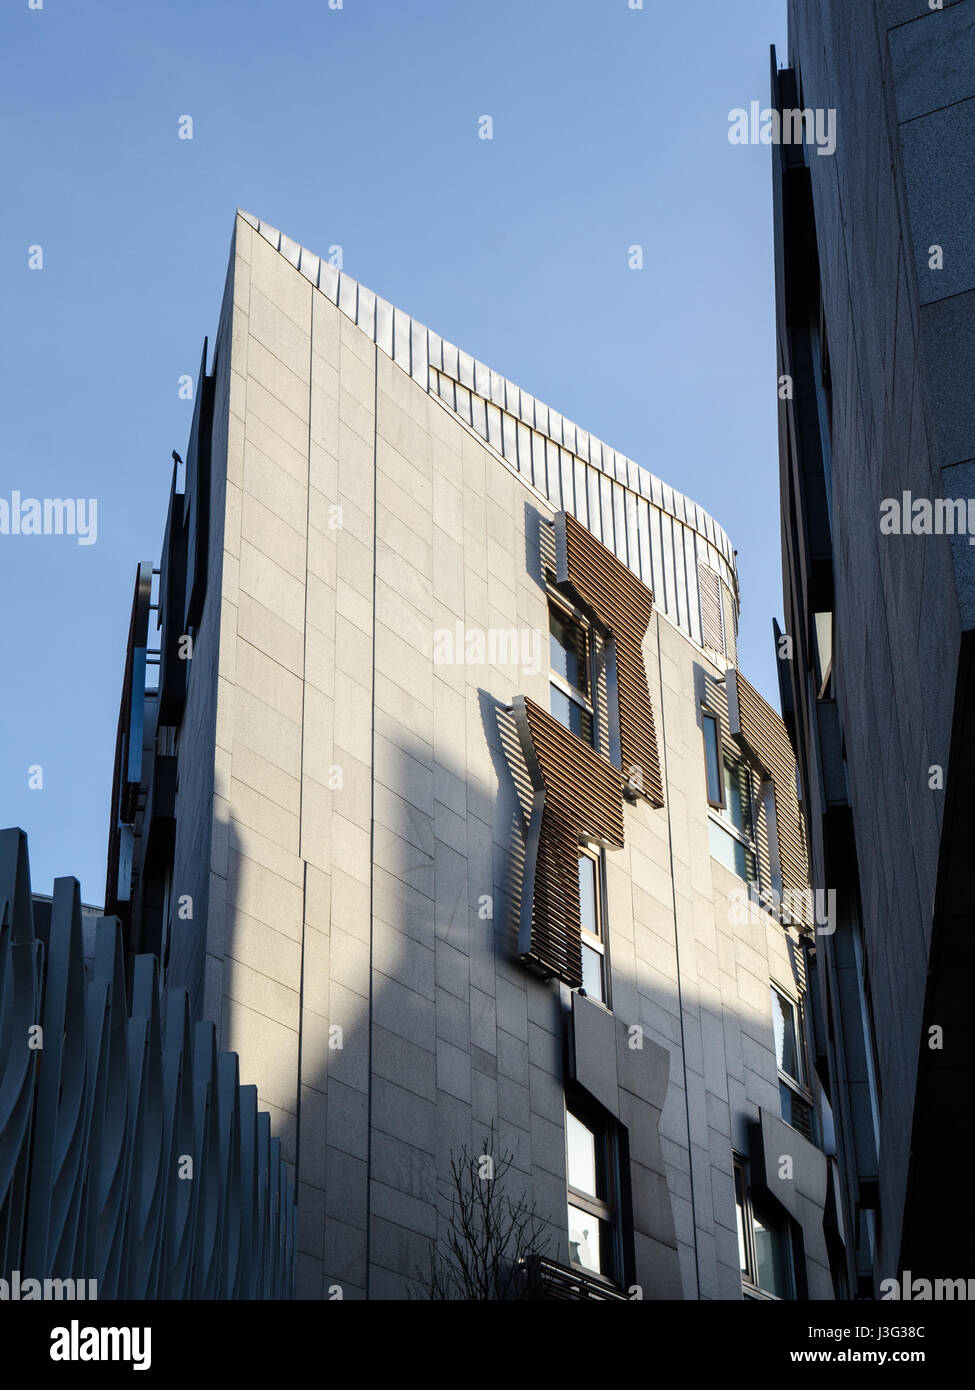 Edimburgo, Scozia, Regno Unito - 21 Marzo 2015: Serata luce brilla sull'edificio del parlamento scozzese. Foto Stock